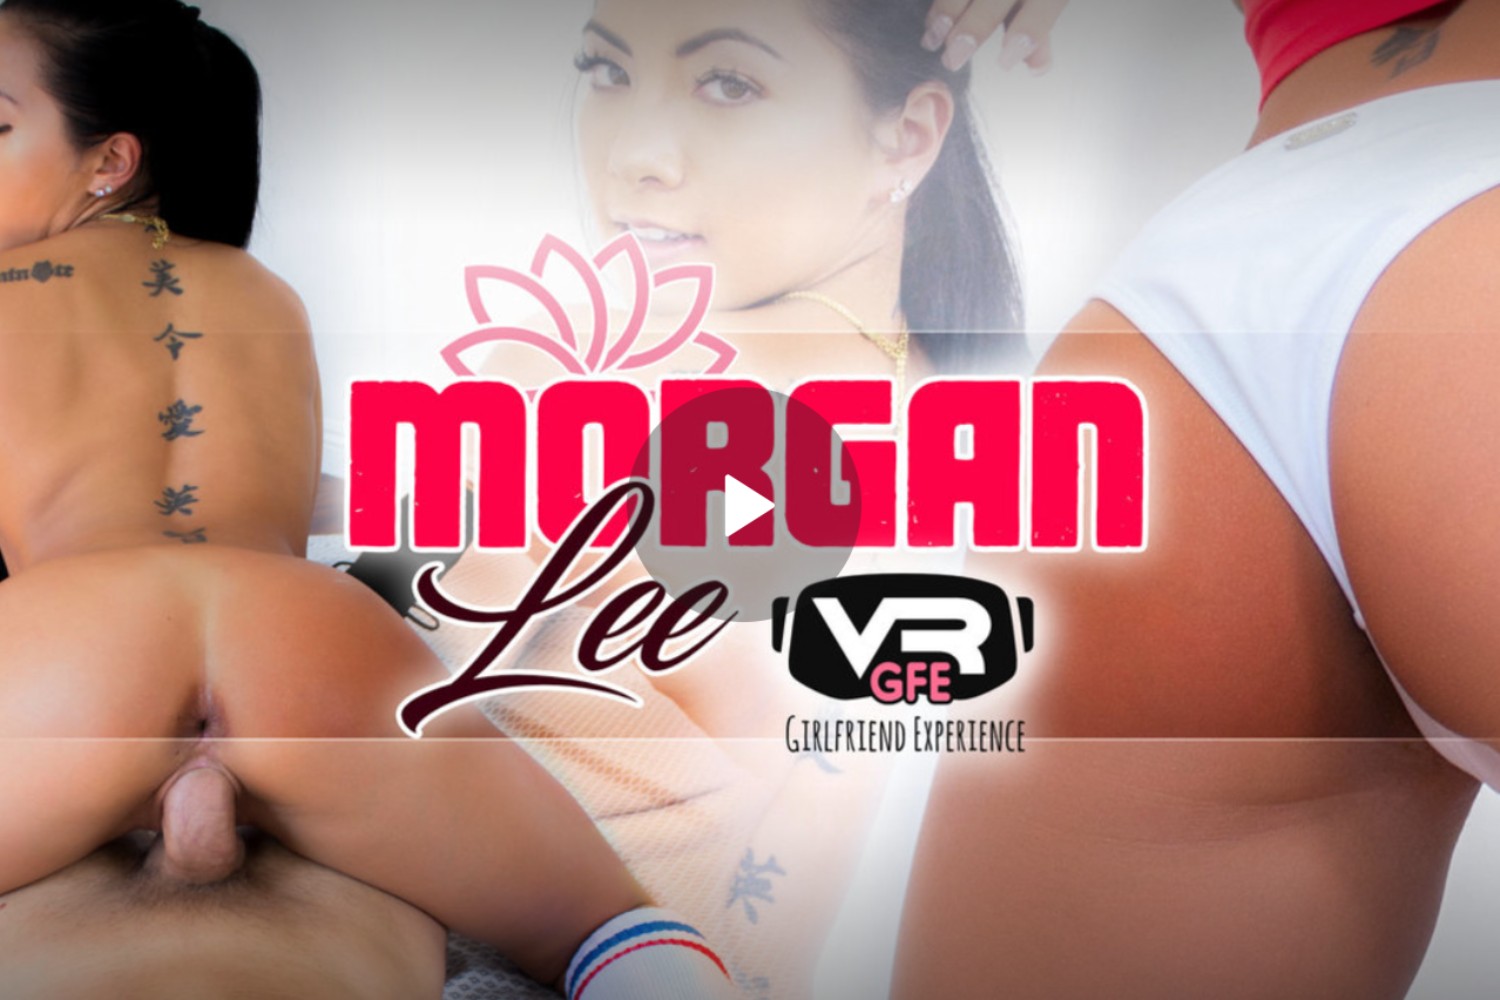 Morgan Lee GFE - Morgan Lee Girlfriend Experience - Morgan Lee VR Porn - Morgan Lee Virtual Reality Porn